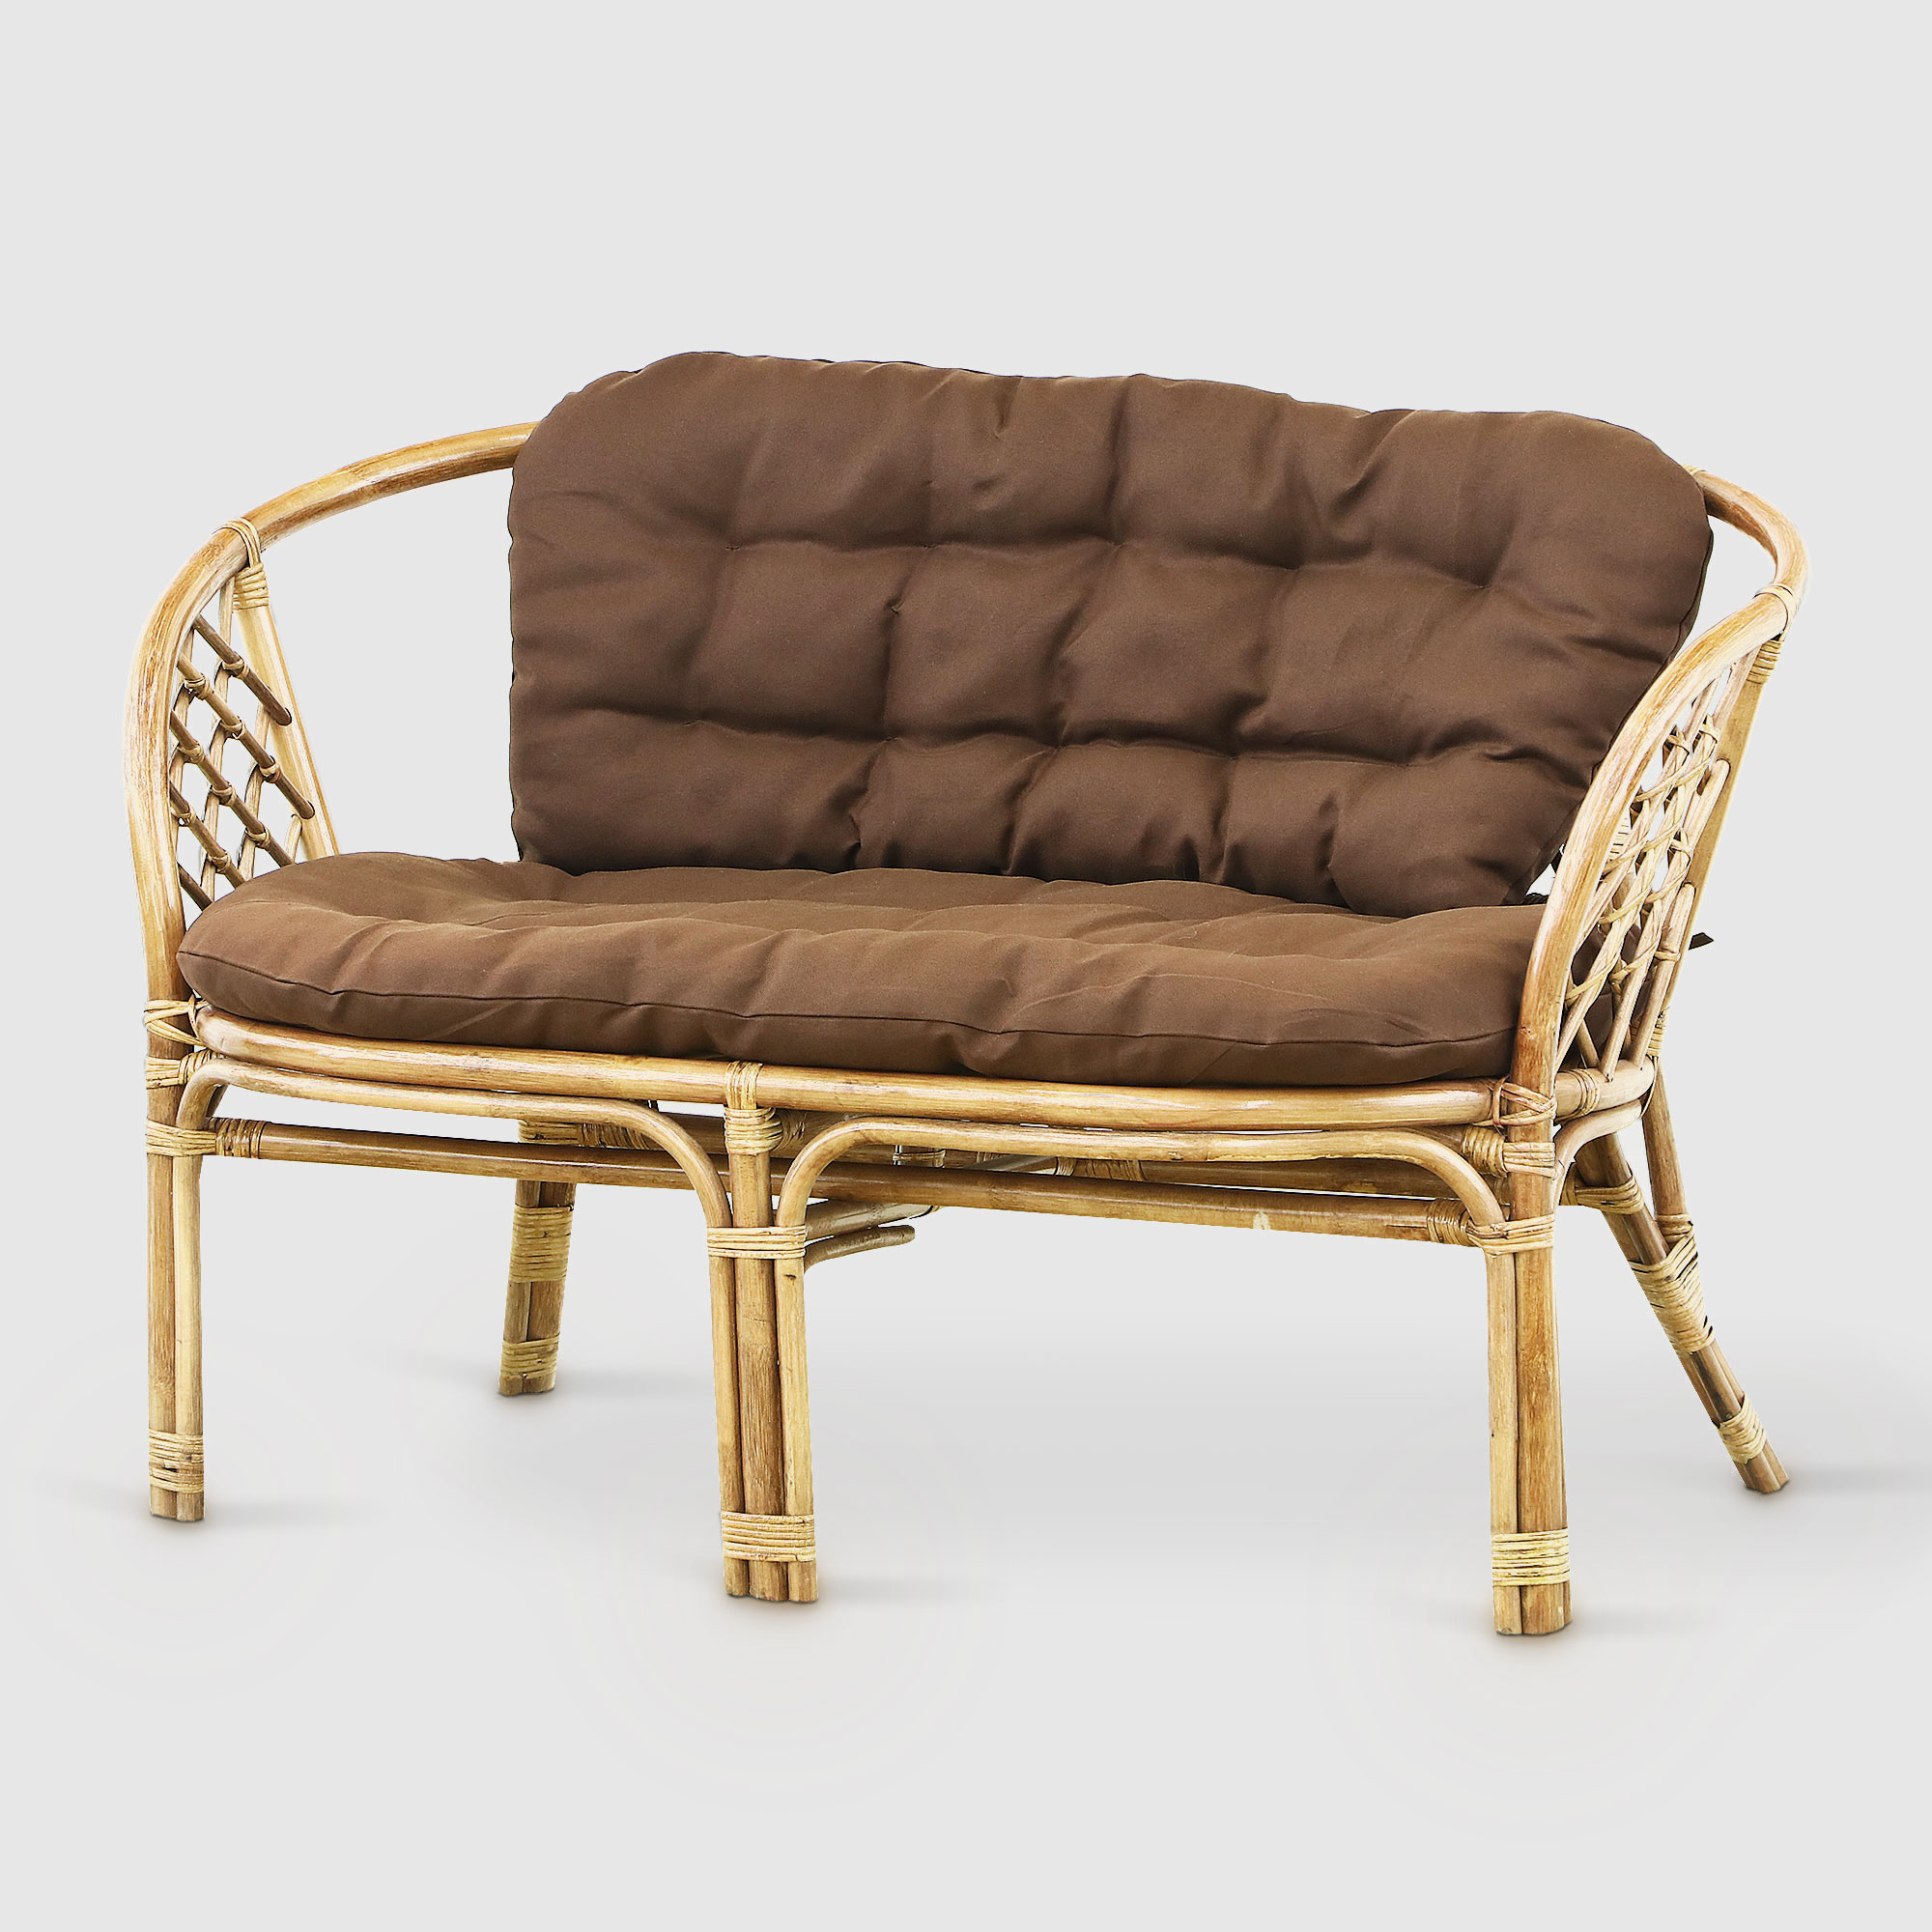 Комплект мебели Rattan grand toscana hon: диван, стол, 2 кресла, цвет светло-коричневый - фото 4